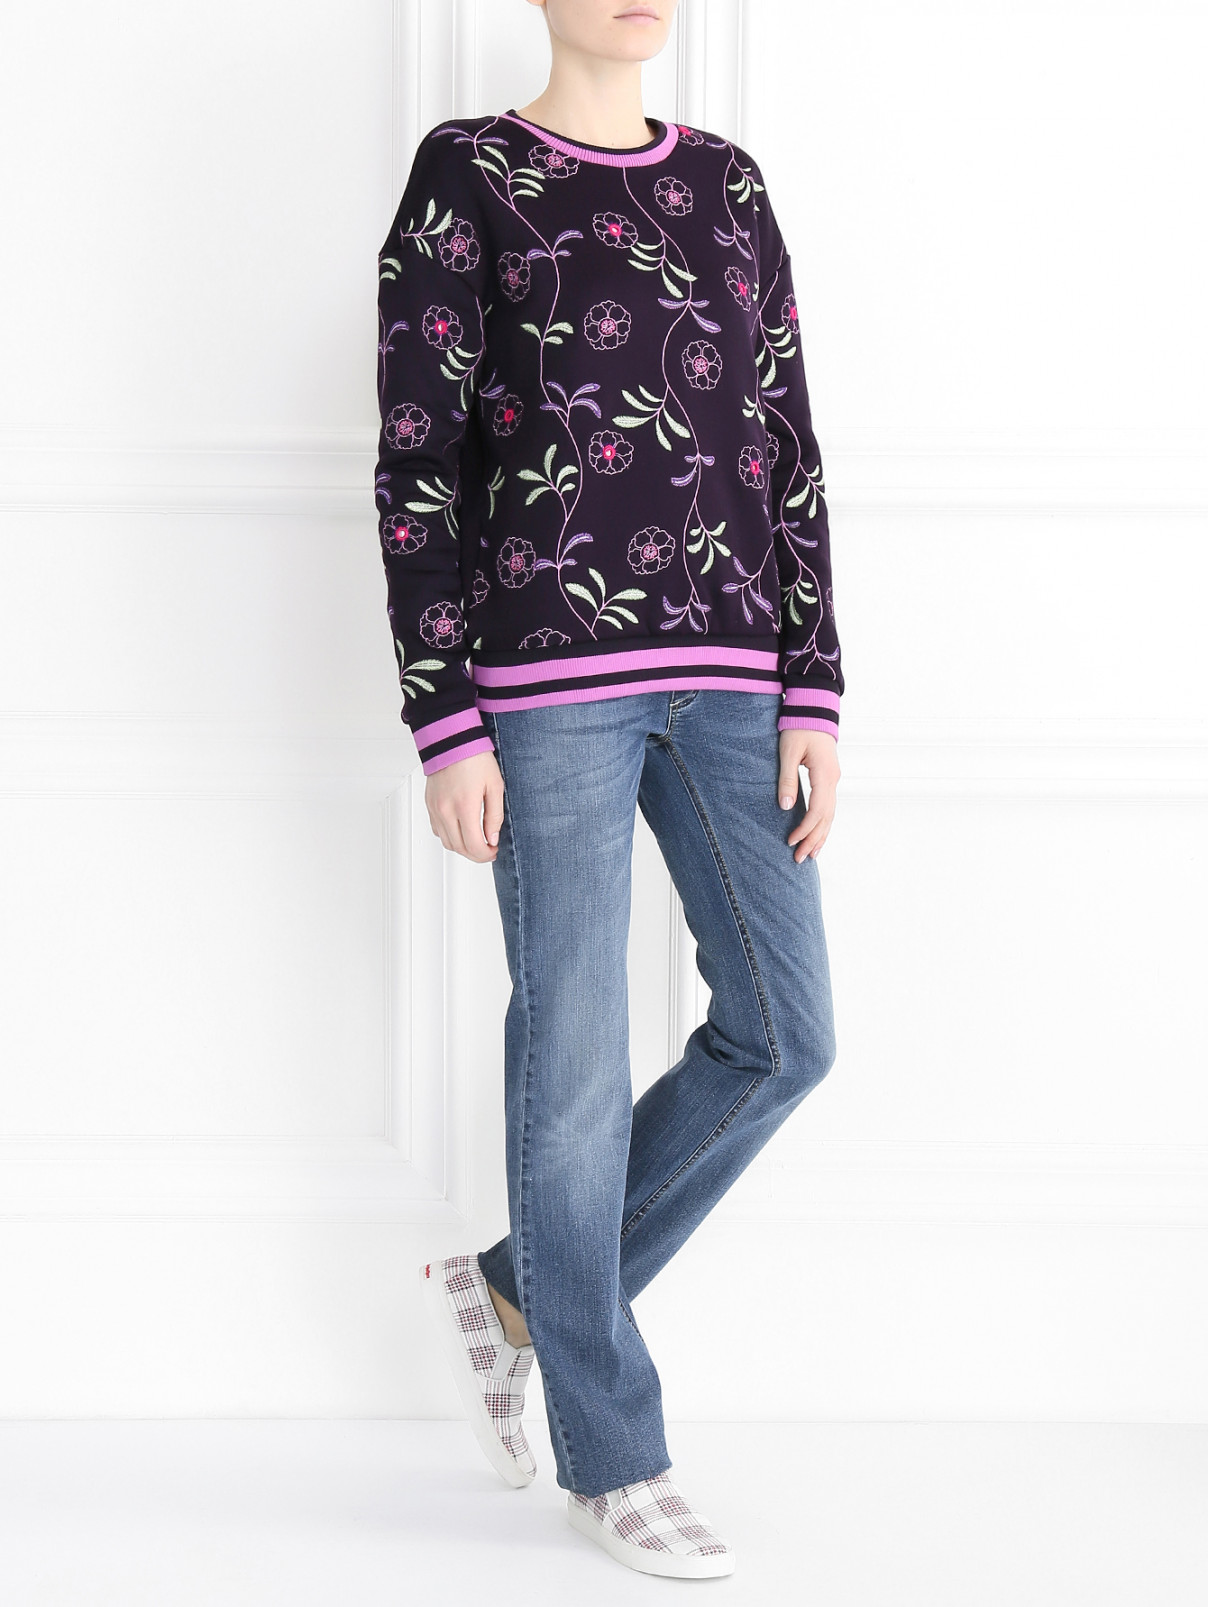 Свитшот с вышивкой Juicy Couture  –  Модель Общий вид  – Цвет:  Фиолетовый